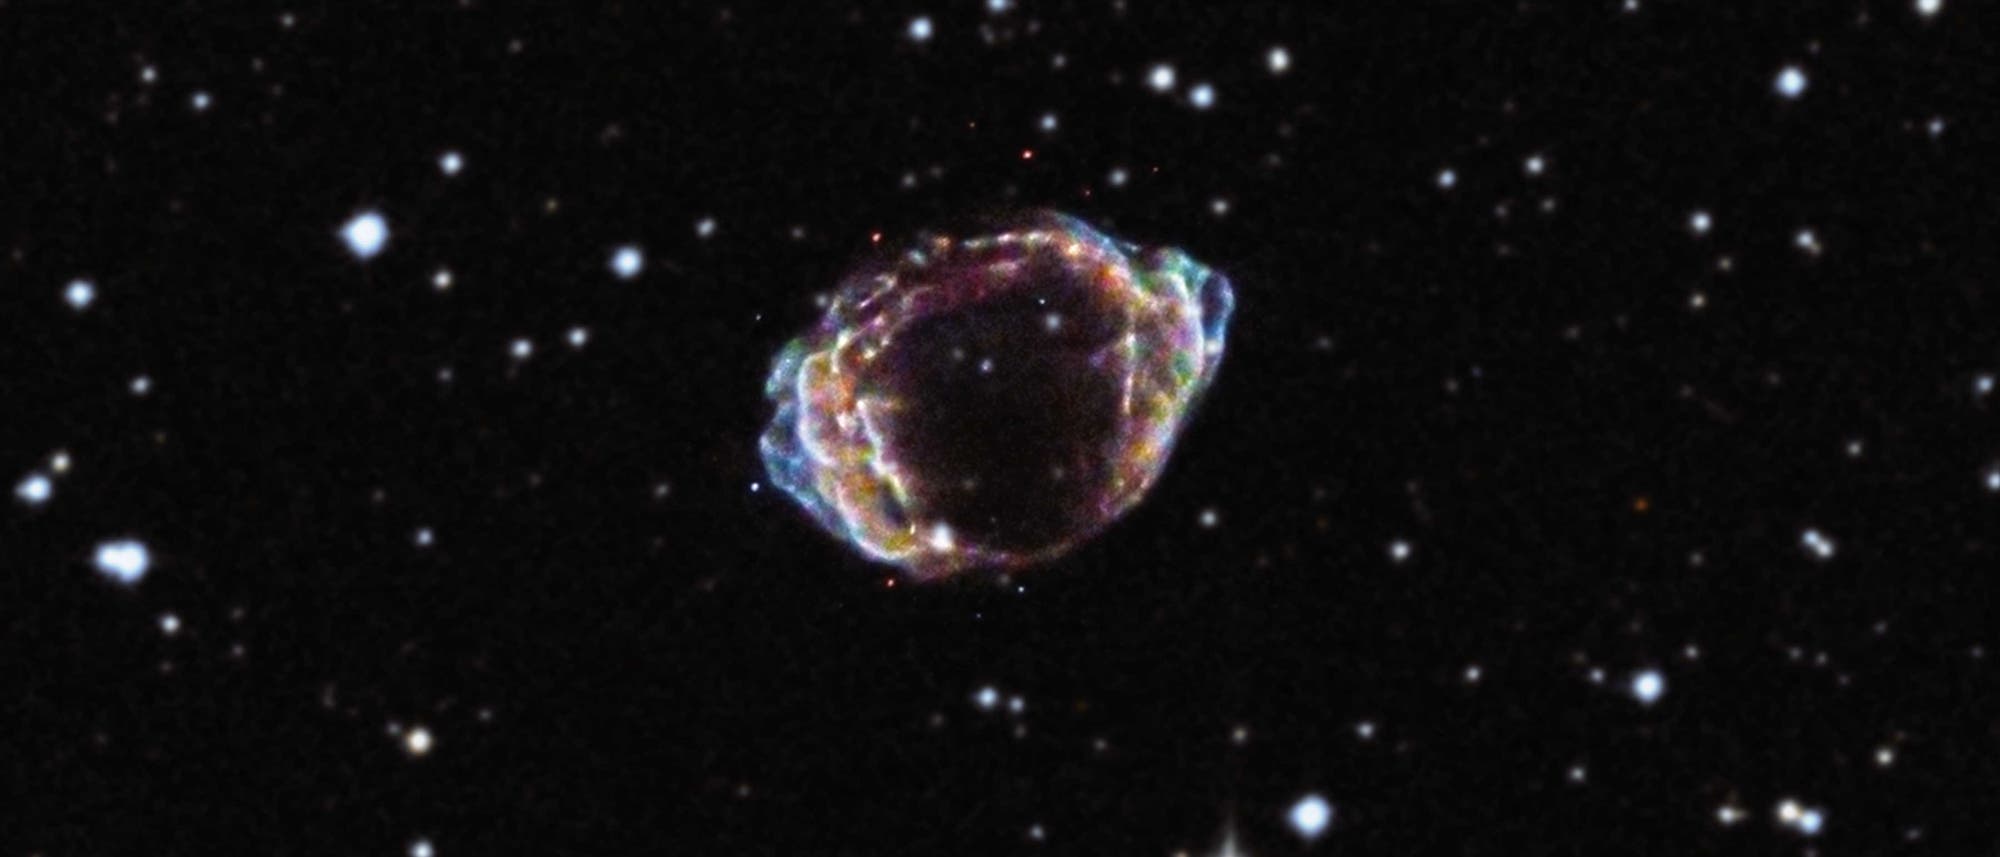 Der Supernova-Überrest G1.9+0.3 im Sternbild Schütze 